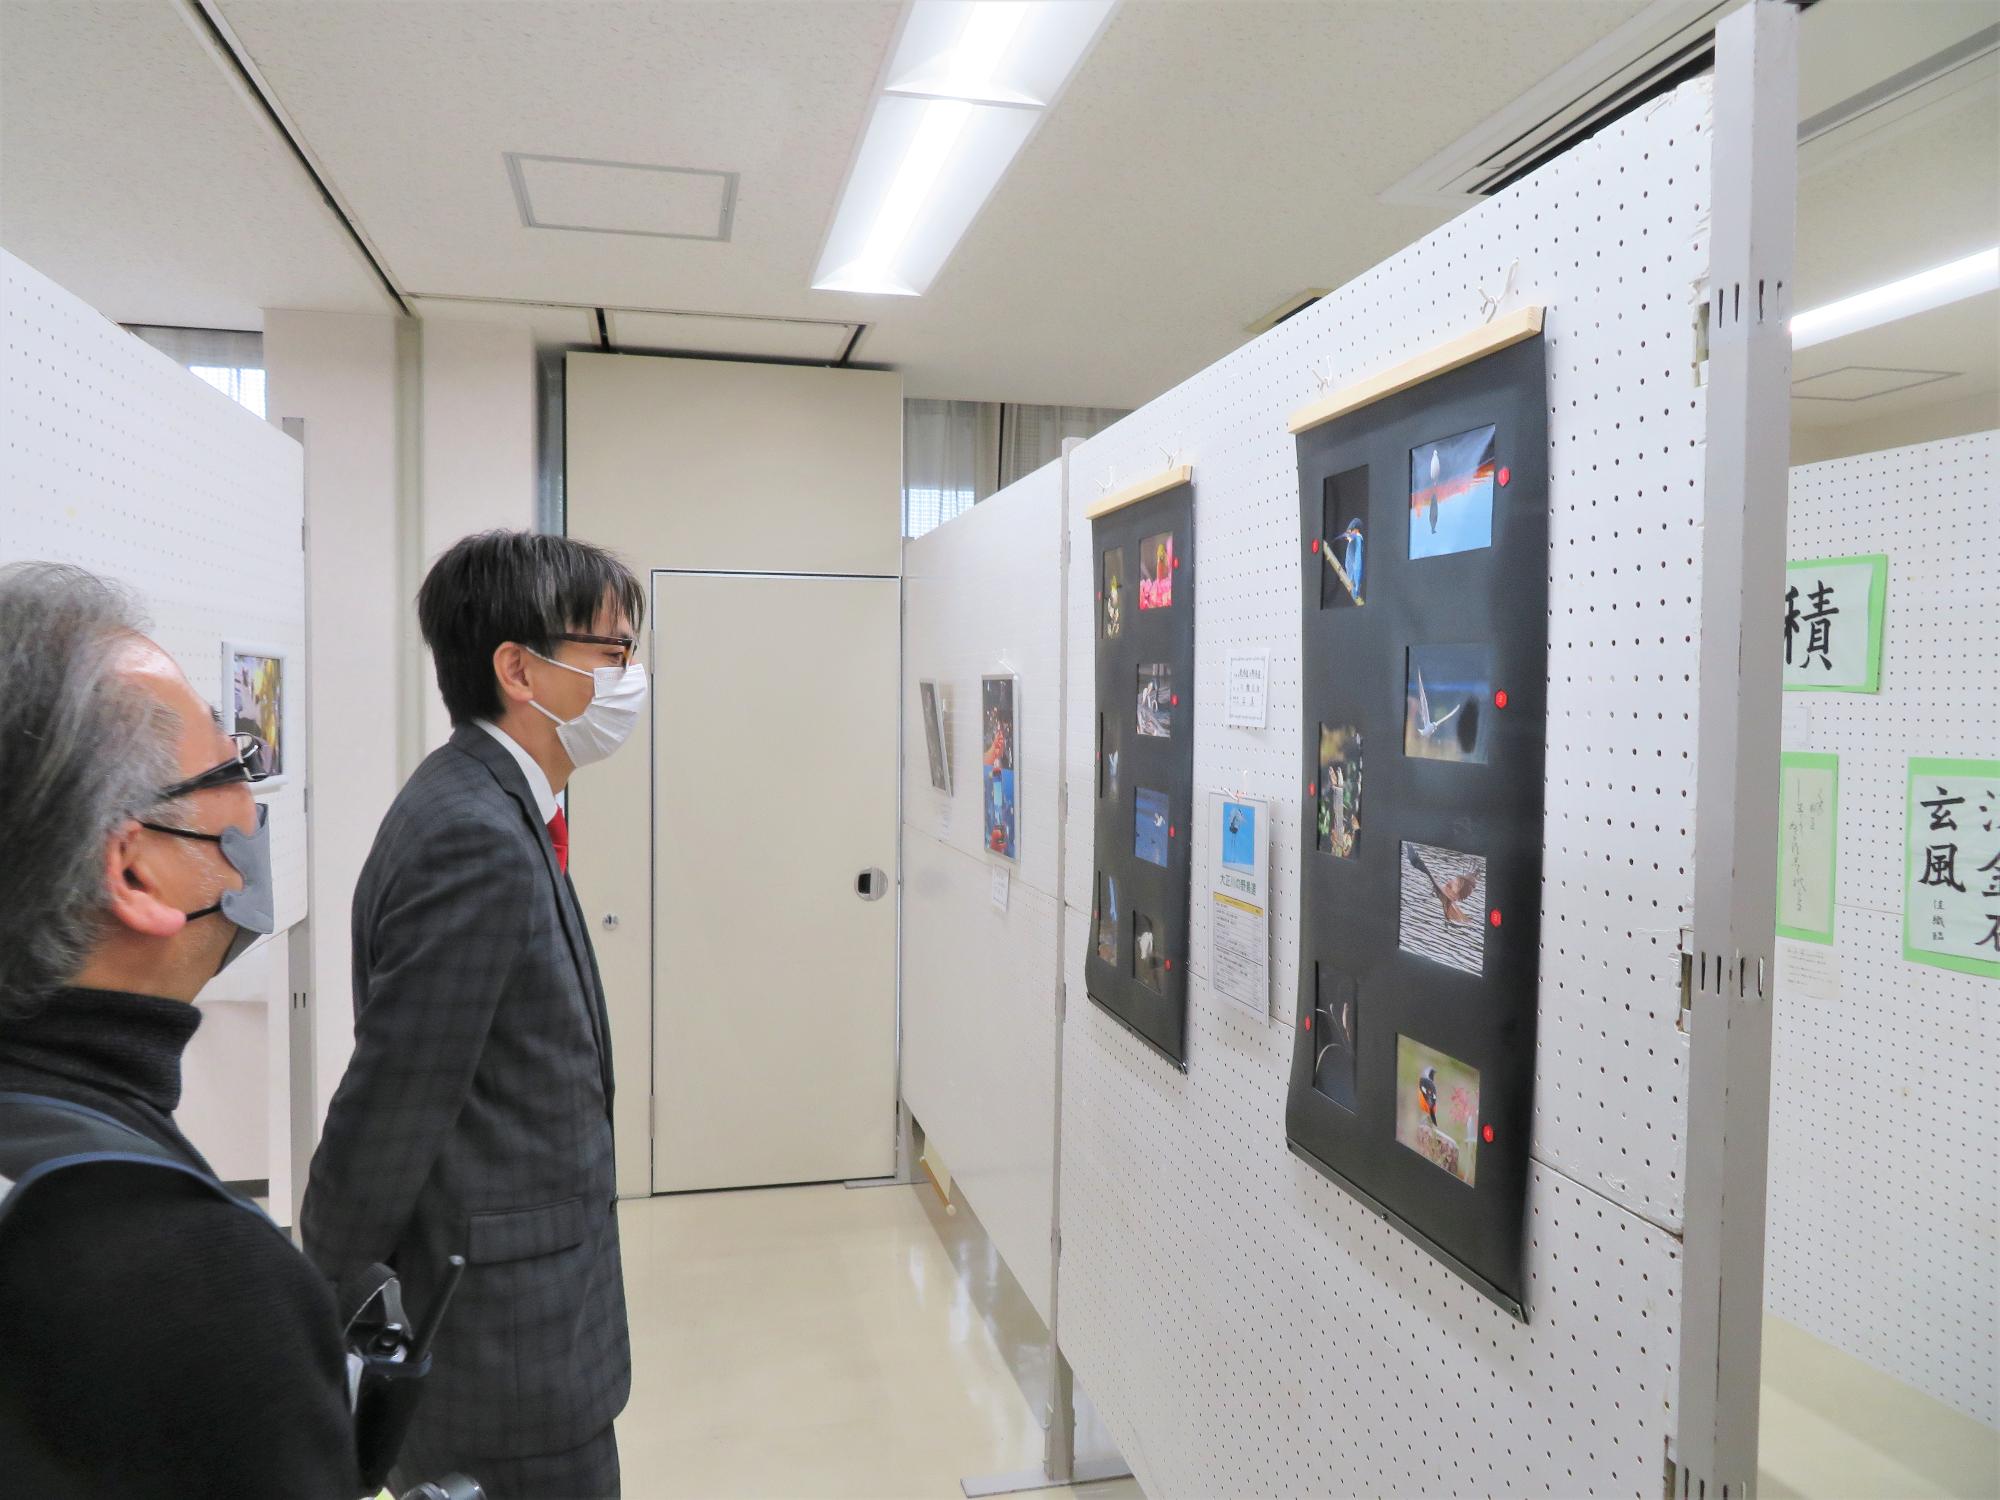 葦原公民館文化展にて展示作品を観る市長の写真